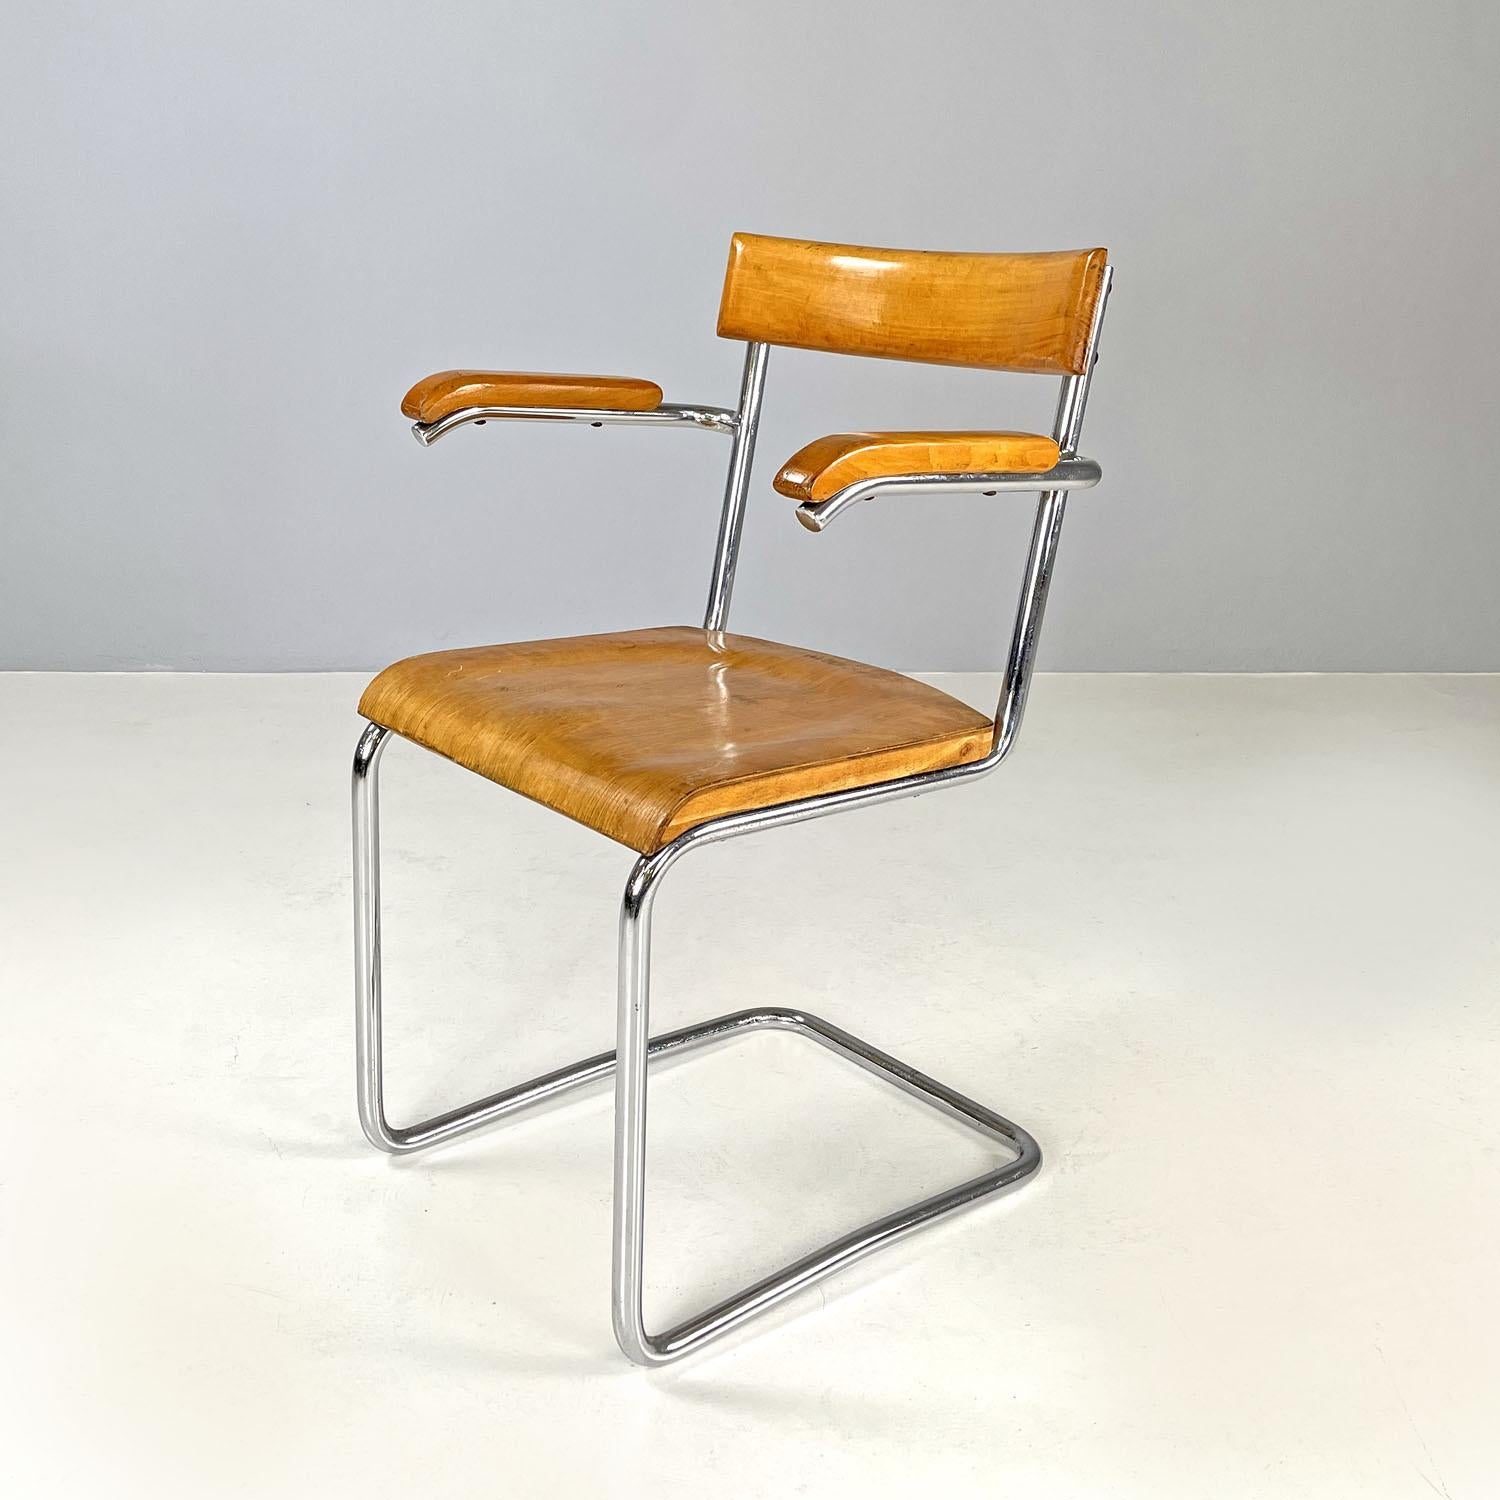 Chaise Art déco tchèque en bois et acier chromé avec accoudoirs par Ladislav Zak, années 1930
Chaise avec accoudoirs et assise rectangulaire. La structure est en acier tubulaire chromé, tandis que l'assise, le dossier et les accoudoirs sont en bois